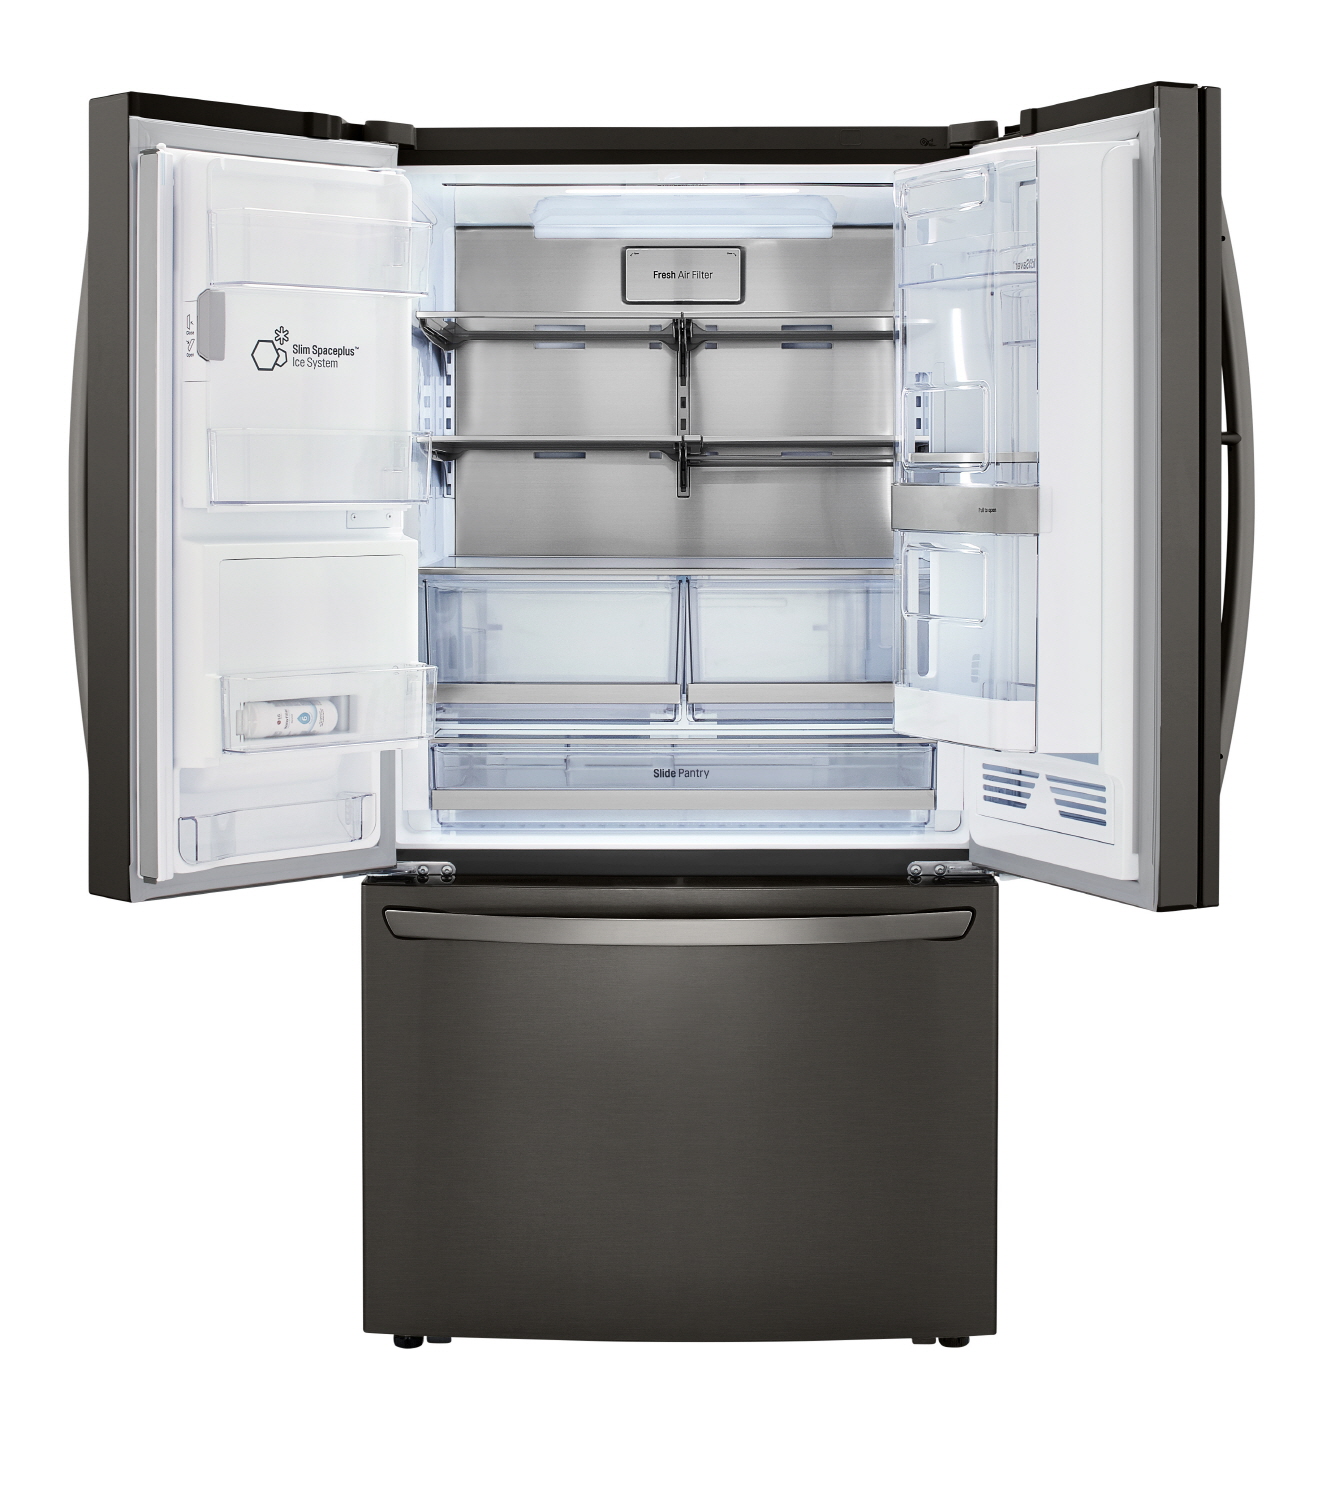  냉장고 안쪽의 공간 활용성을 높여주는 독보적인 도어 제빙 기술로 LG전자 얼음정수기냉장고는 미국 시장에서 최고 프리미엄 제품으로 인정받고 있다.